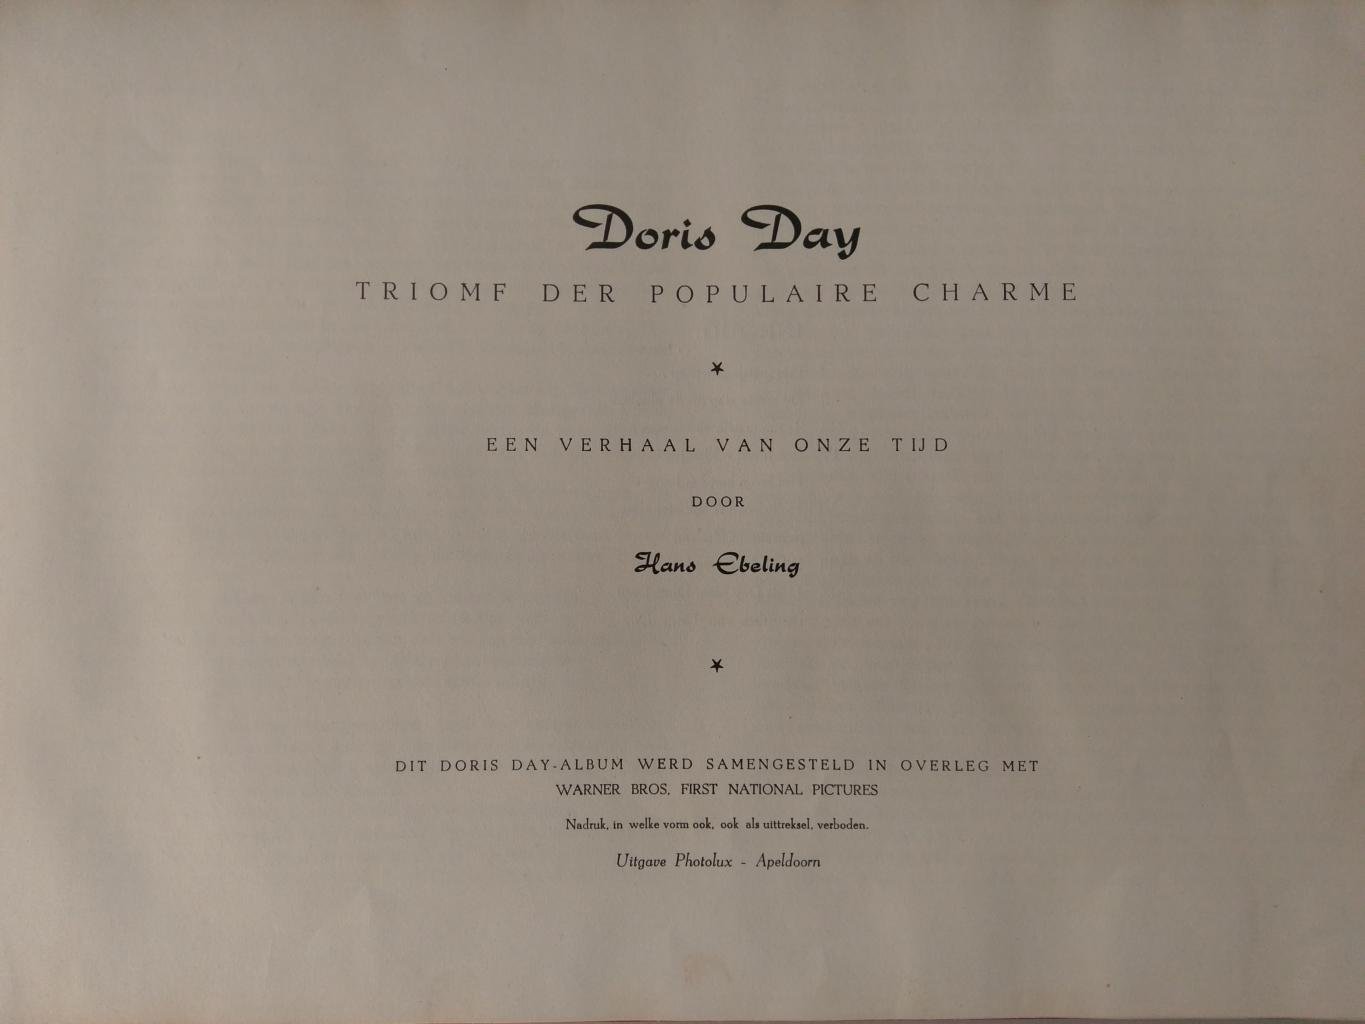 EBELING, HANS - Doris Day triomf der populaire charme. Een verhaal van onze tijd.